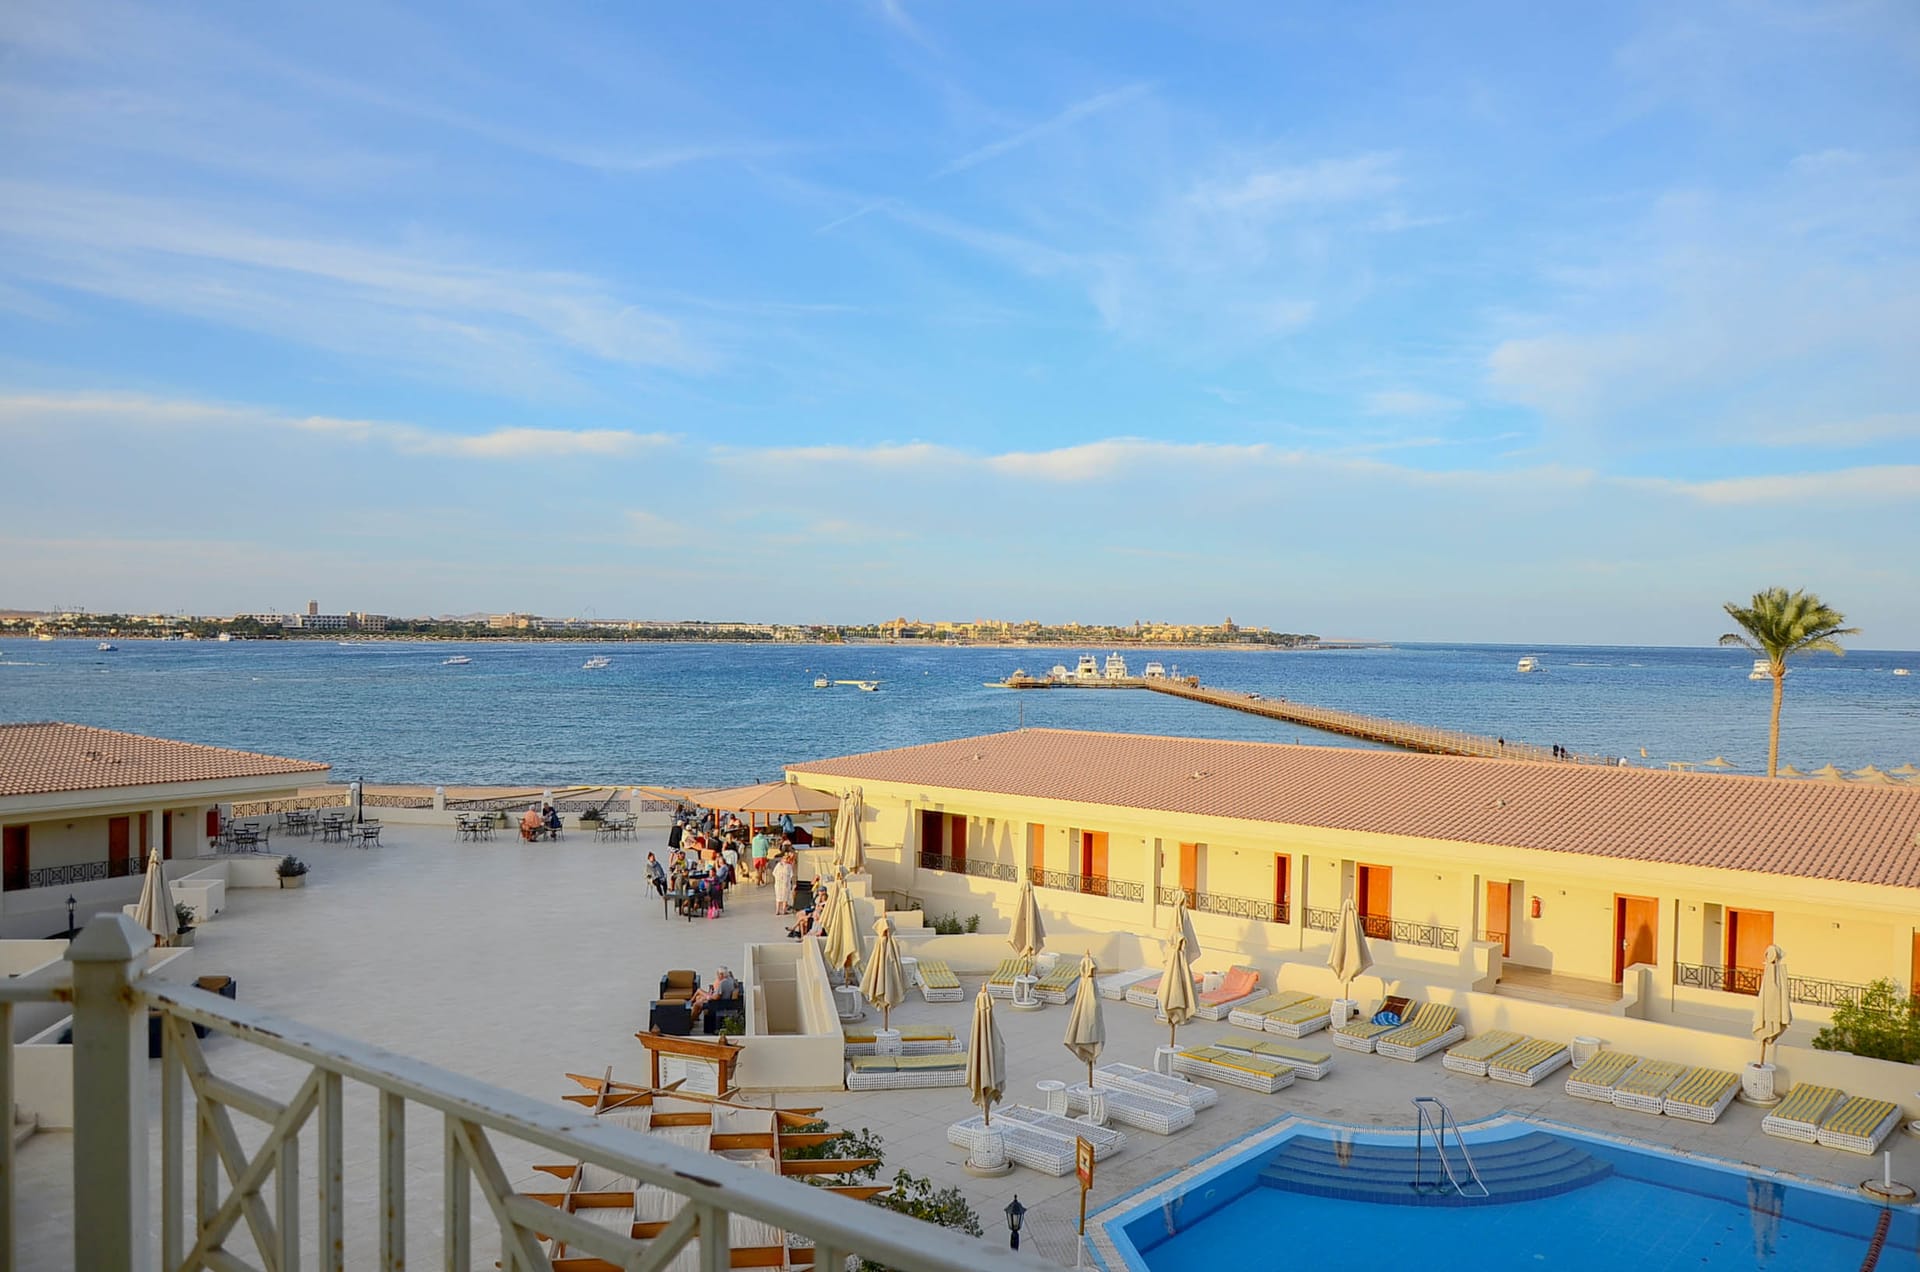 Cleopatra Luxury Beach Resort: Das ägyptische Hotel hat ein eigenes Riff, an dem Gäste tauchen können.